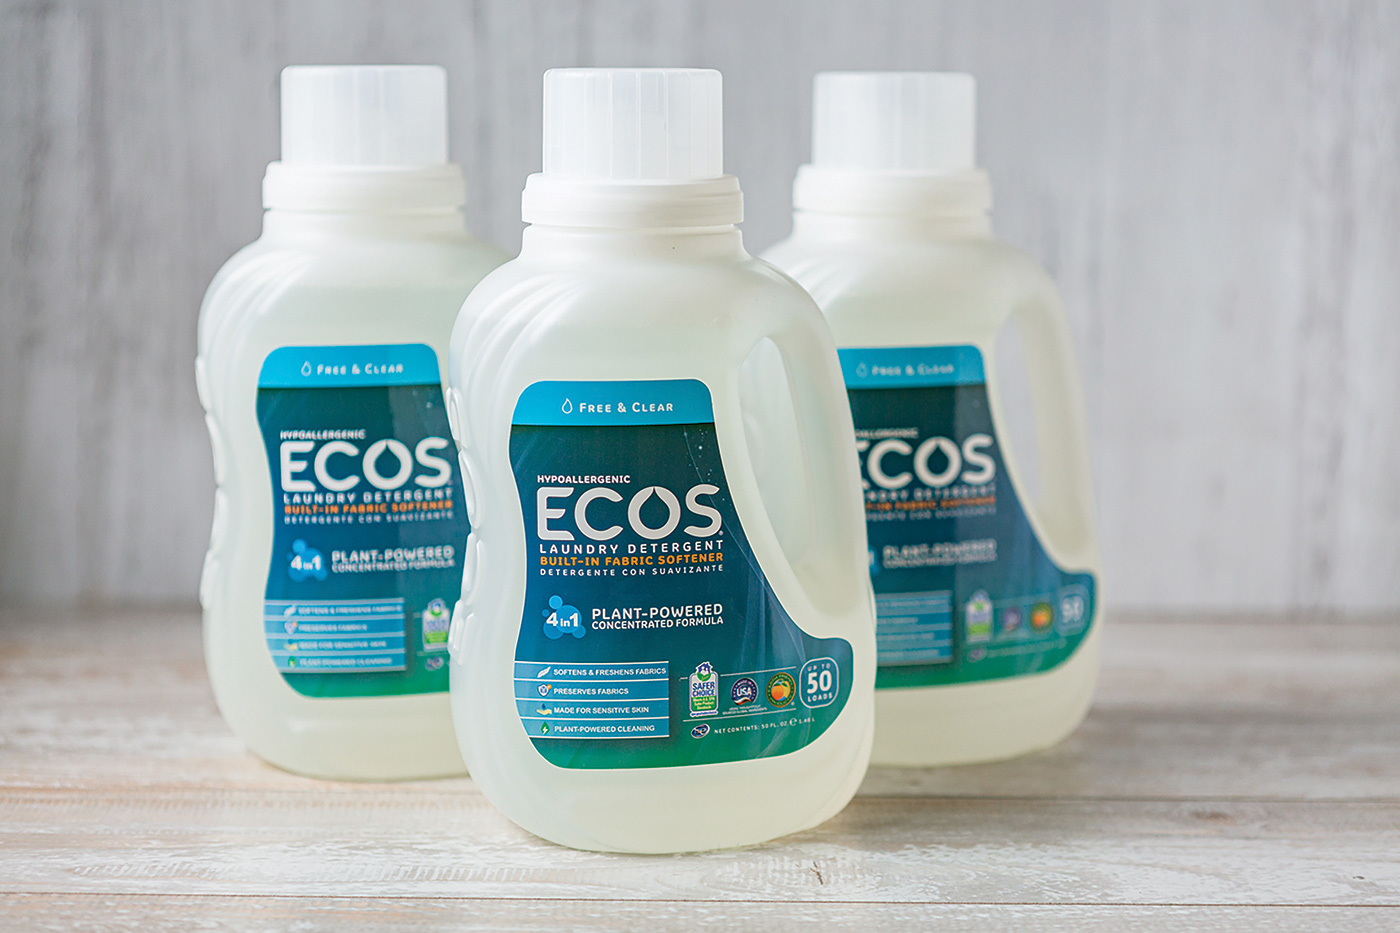 Ecos detergent lineup